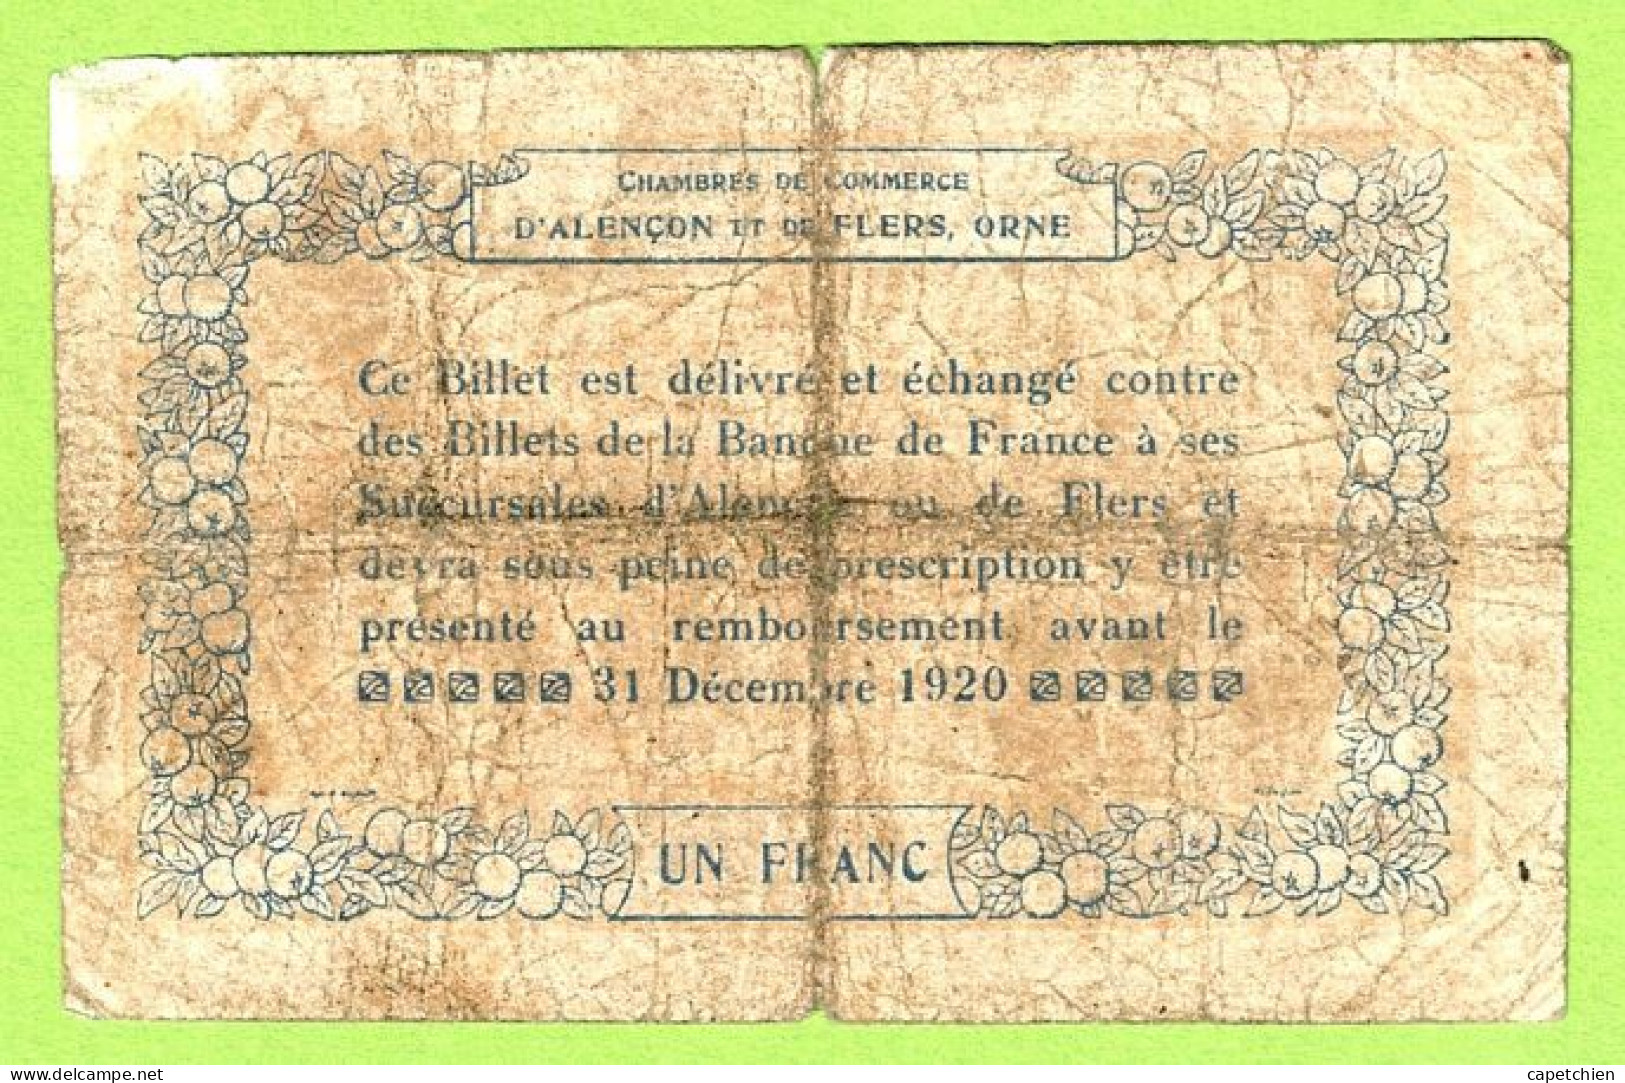 FRANCE / CHAMBRE DE COMMERCE / ALENCON & FLERS / 1 FRANC /  10 AOUT 1915  / SERIE 2-0-1 / N° 2359 - Camera Di Commercio